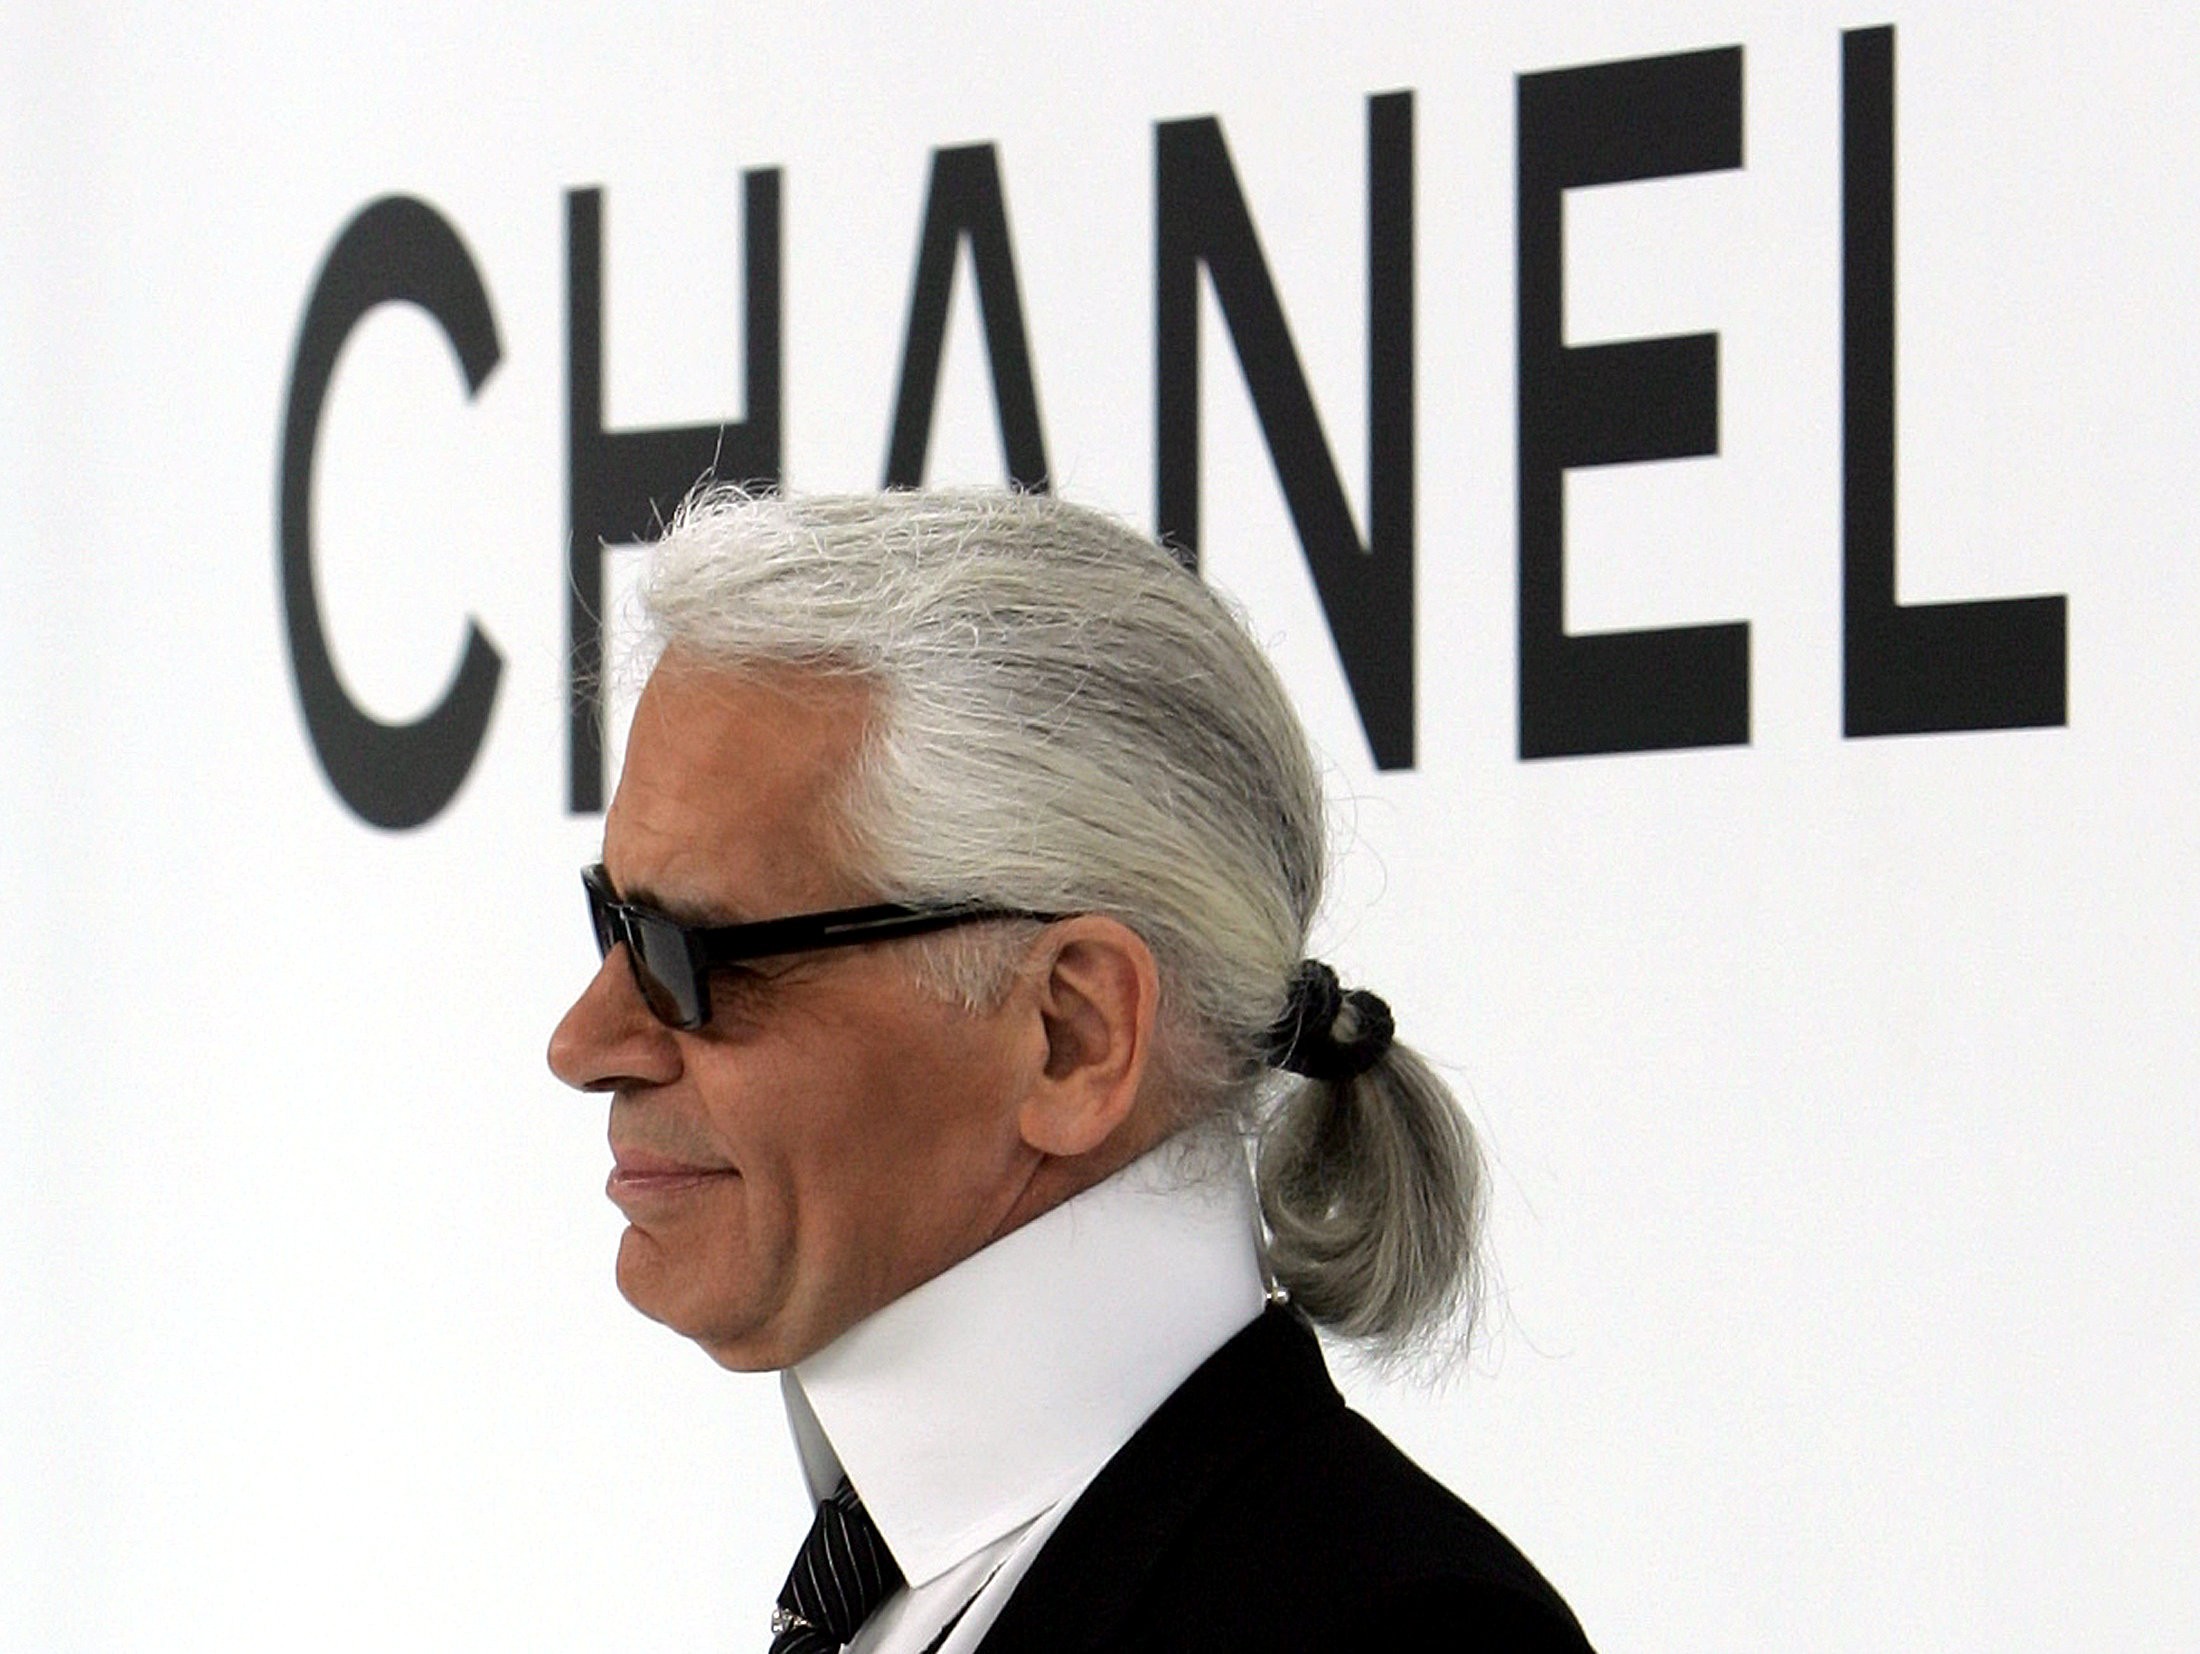 Legendary fashion designer Karl Lagerfeld dies at 85